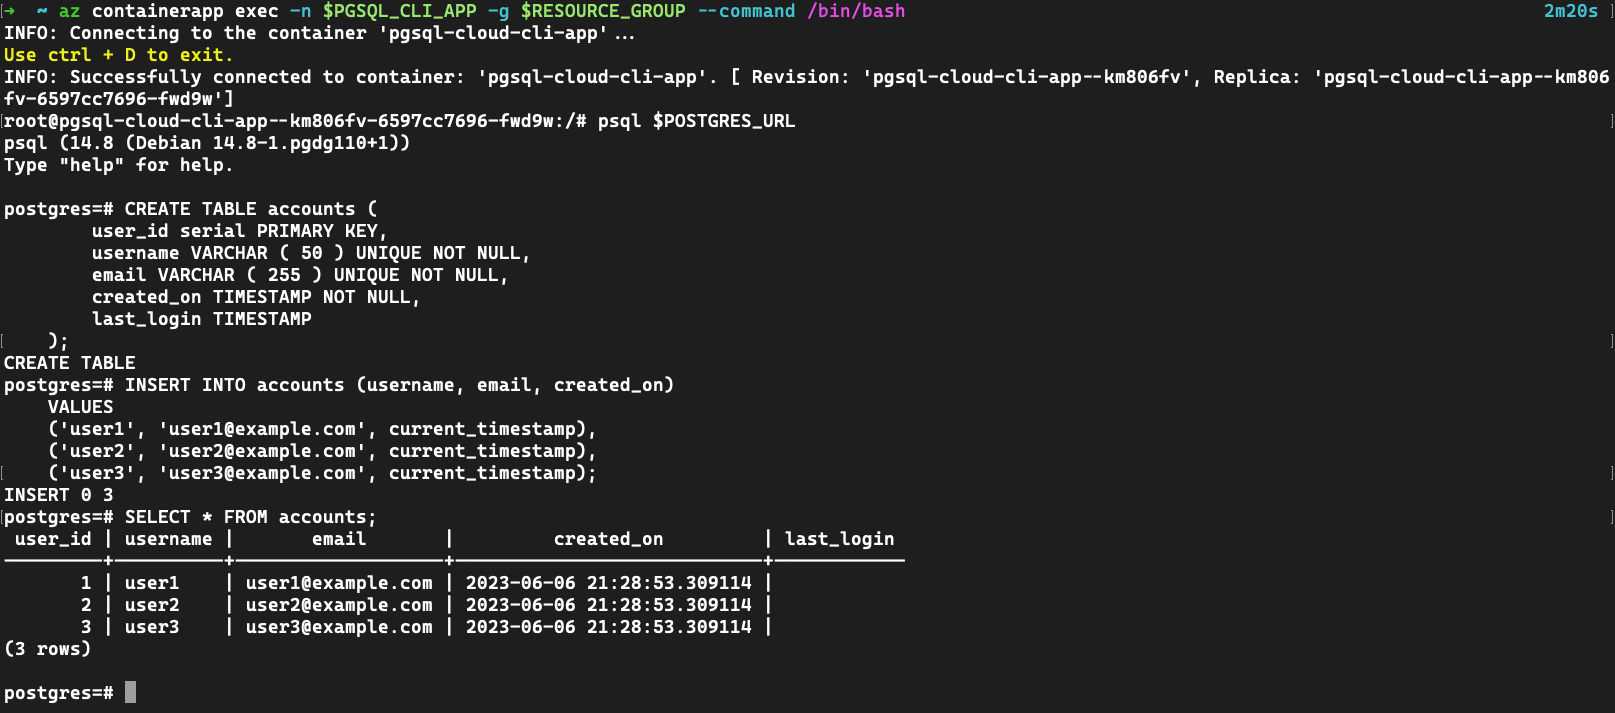 Captura de ecrã da aplicação de contentor com pgsql connect to PostgreSQL (Ligar ao PostgreSQL) e criar uma tabela e propagar alguns dados.